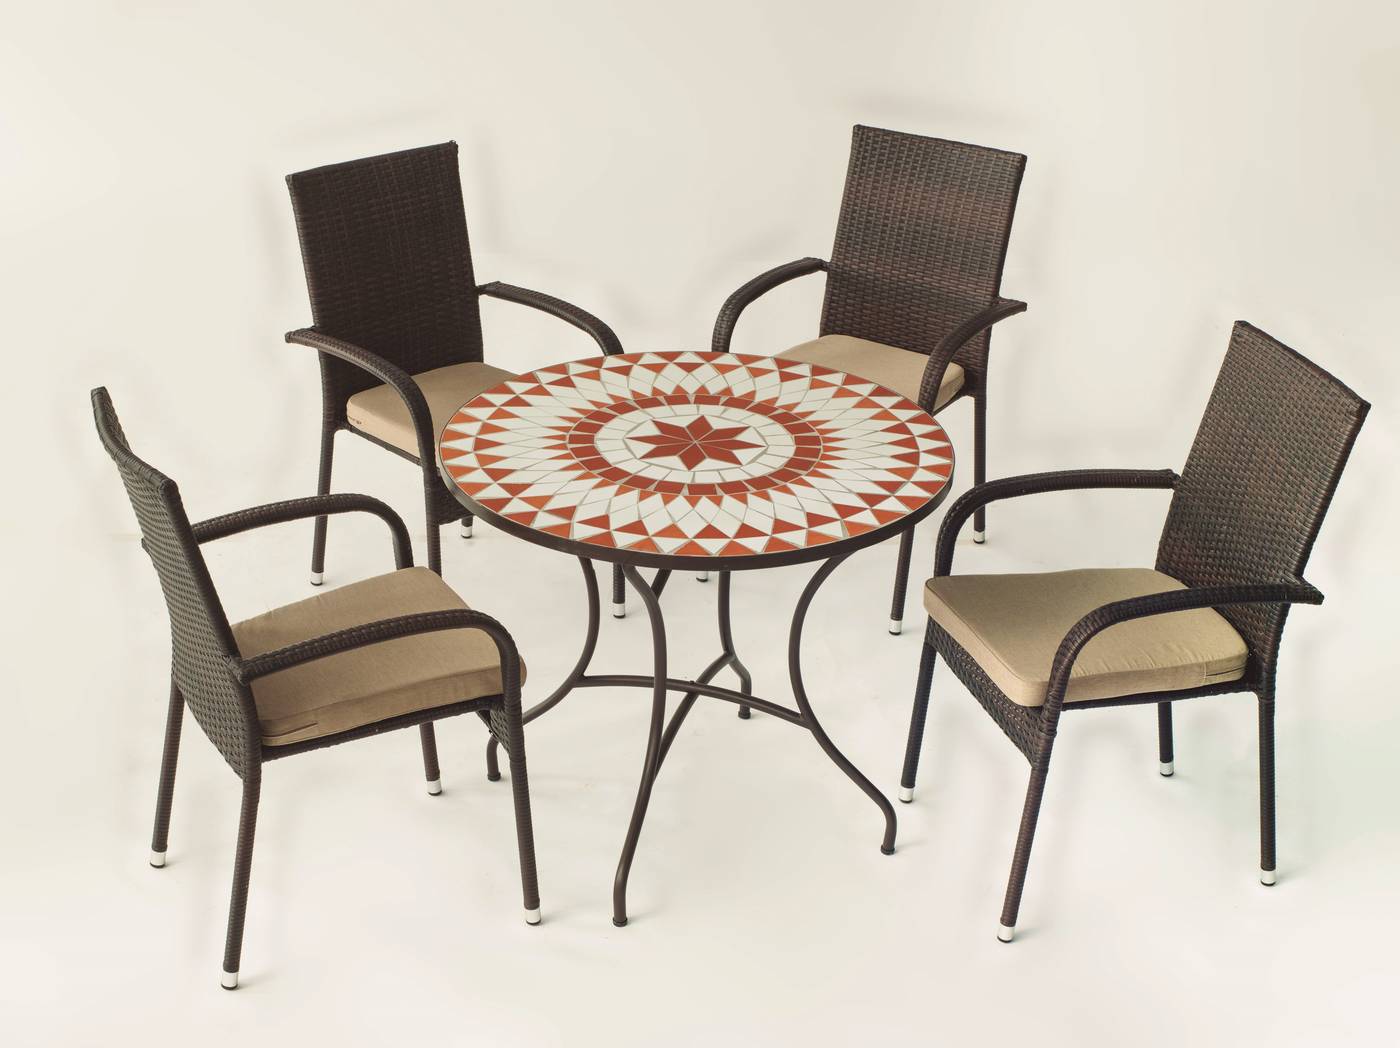 Conjunto de forja color marrón: mesa con tablero mosaico de 90 cm + 4 sillones de ratán sintético con cojines.